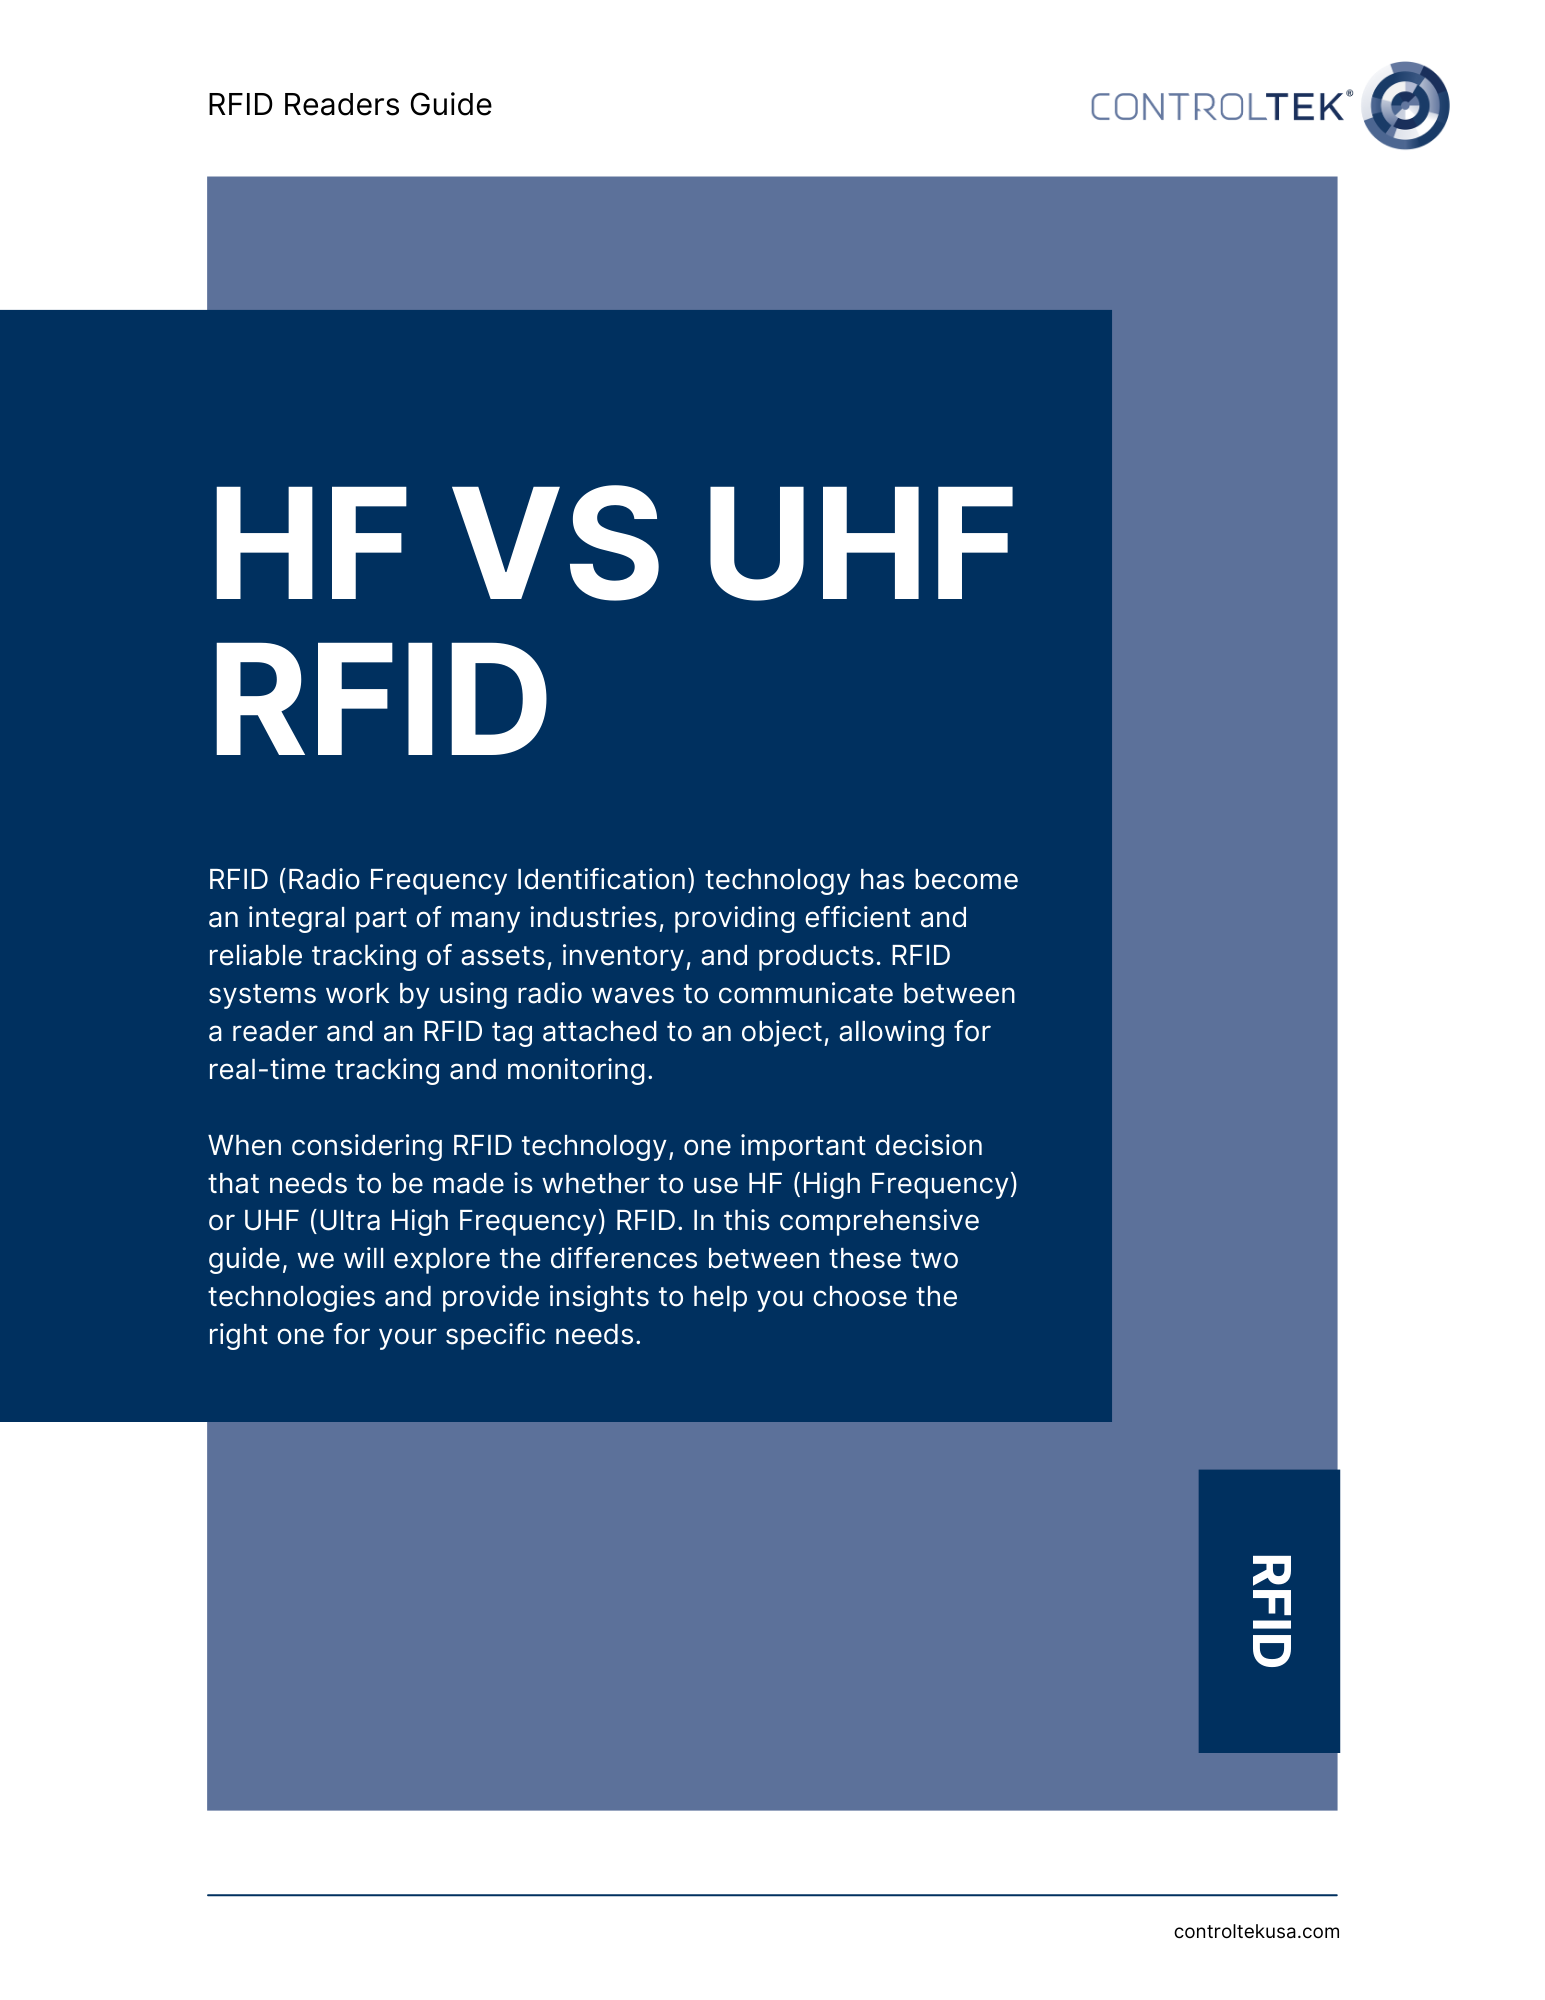 HF v UHF